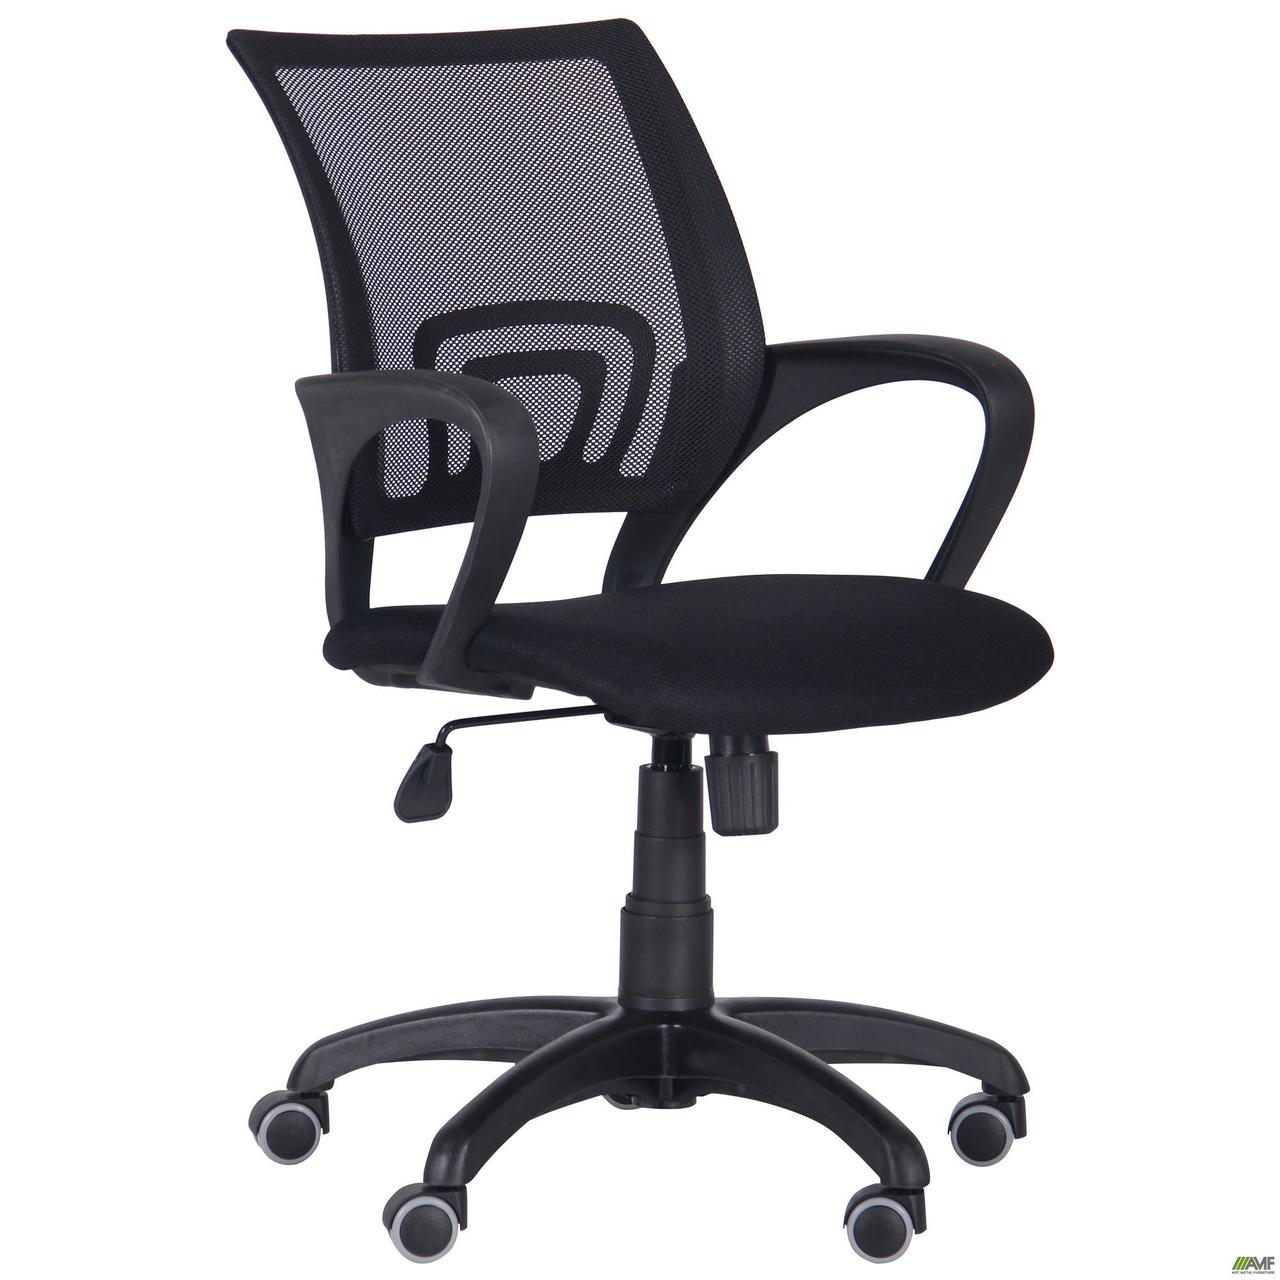 Крісло офісне AMF Веб з сітчастою спинкою чорне для будинку і оператору офіс